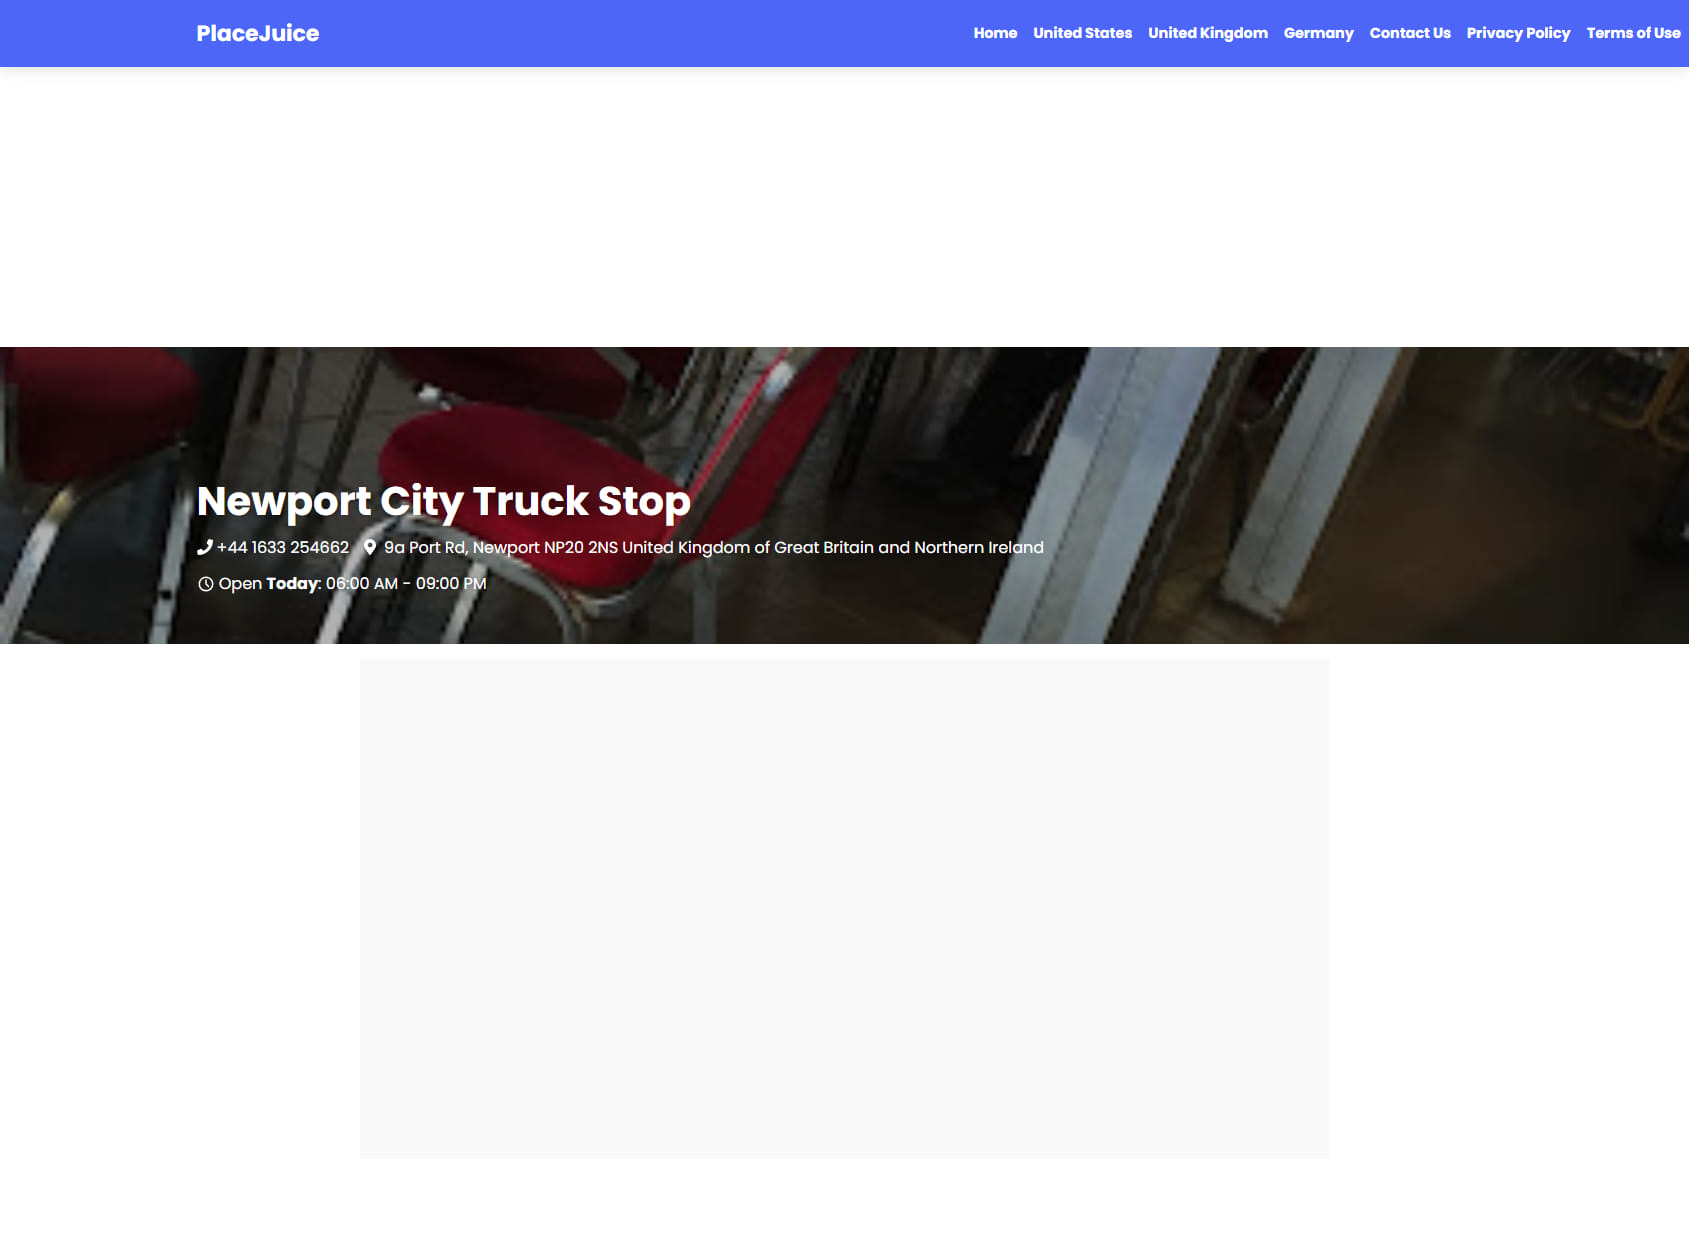 Newport City Truck Stop